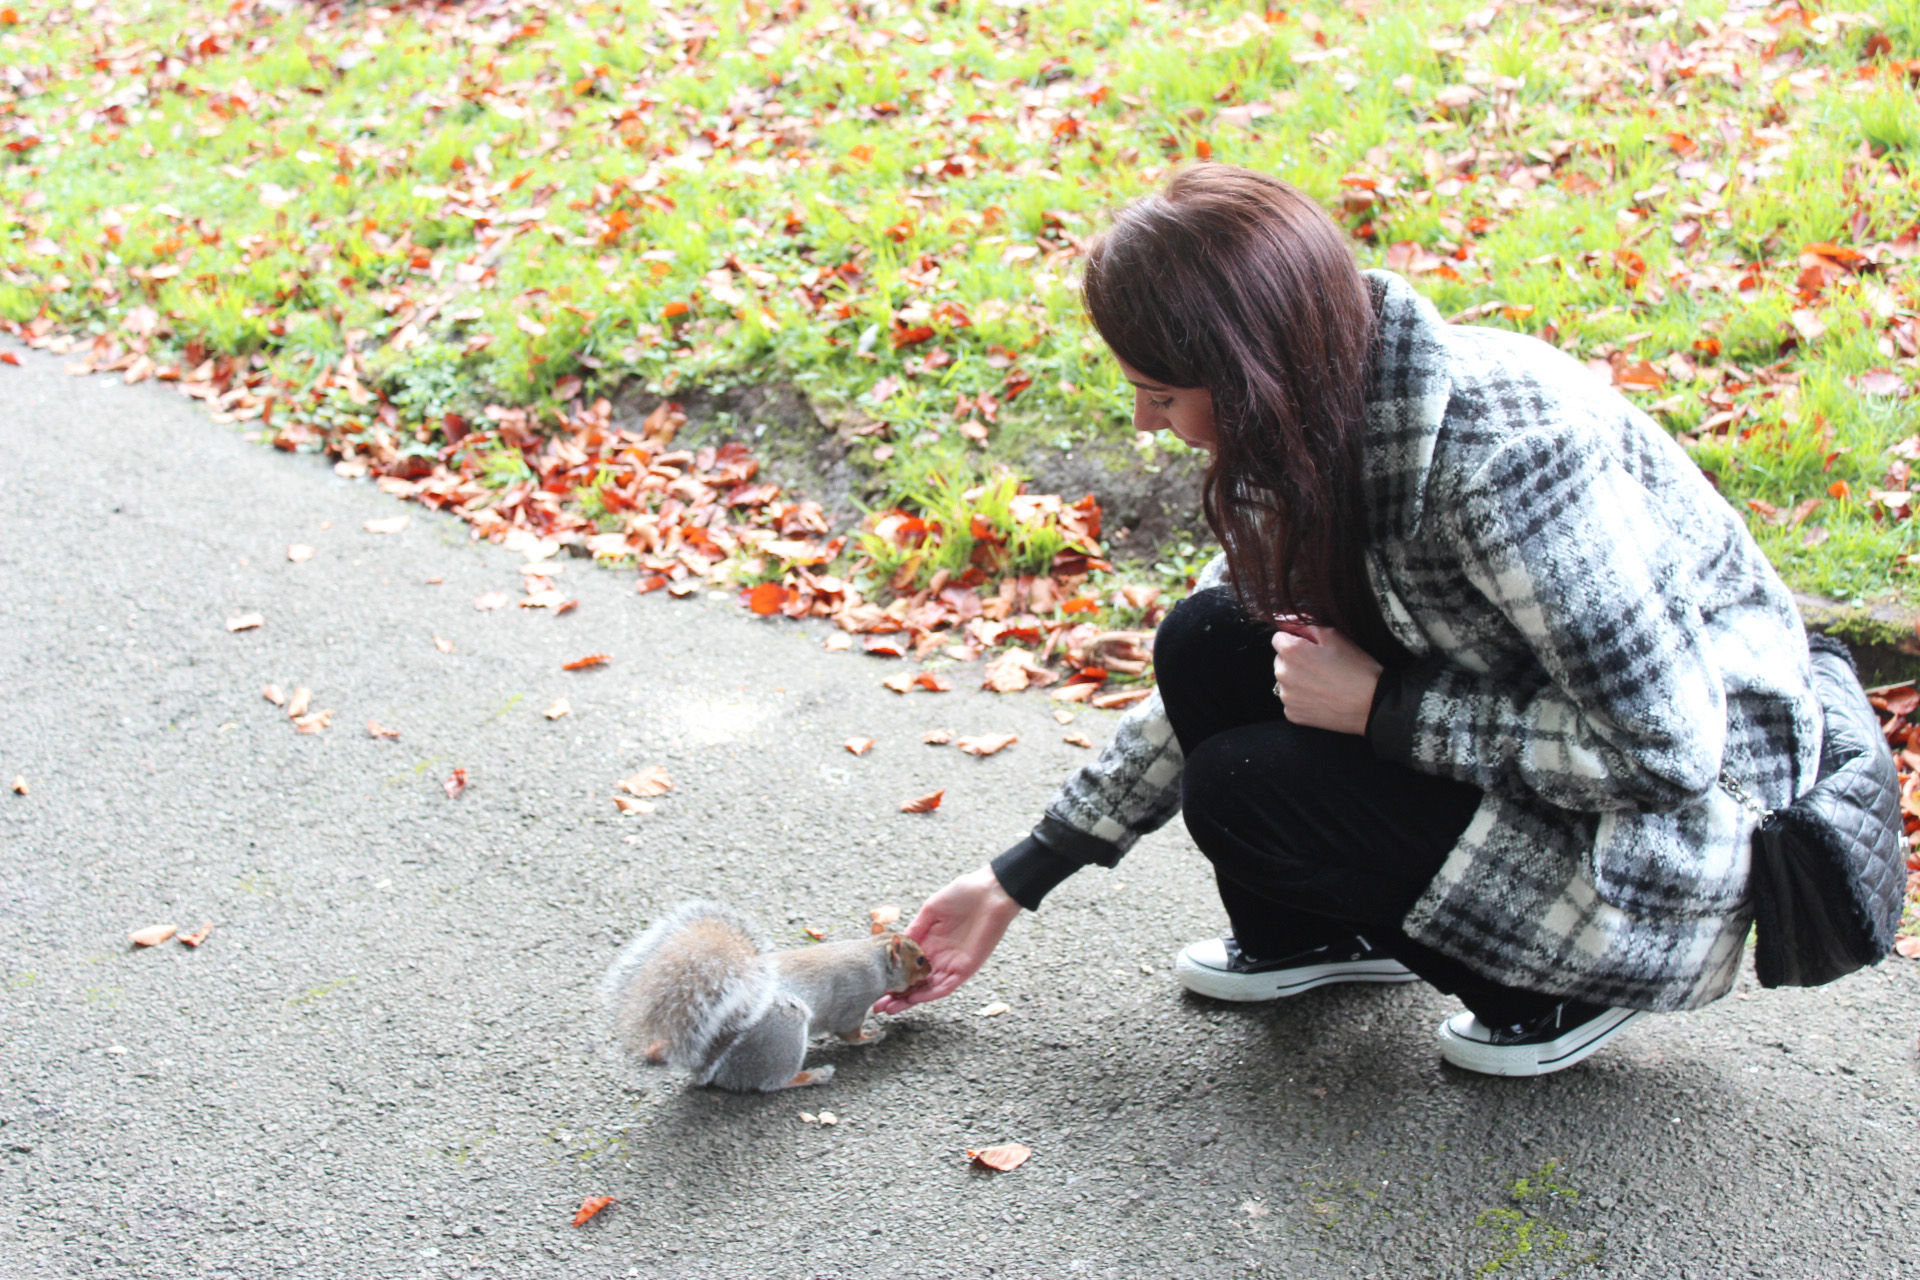 Feeding squirrels